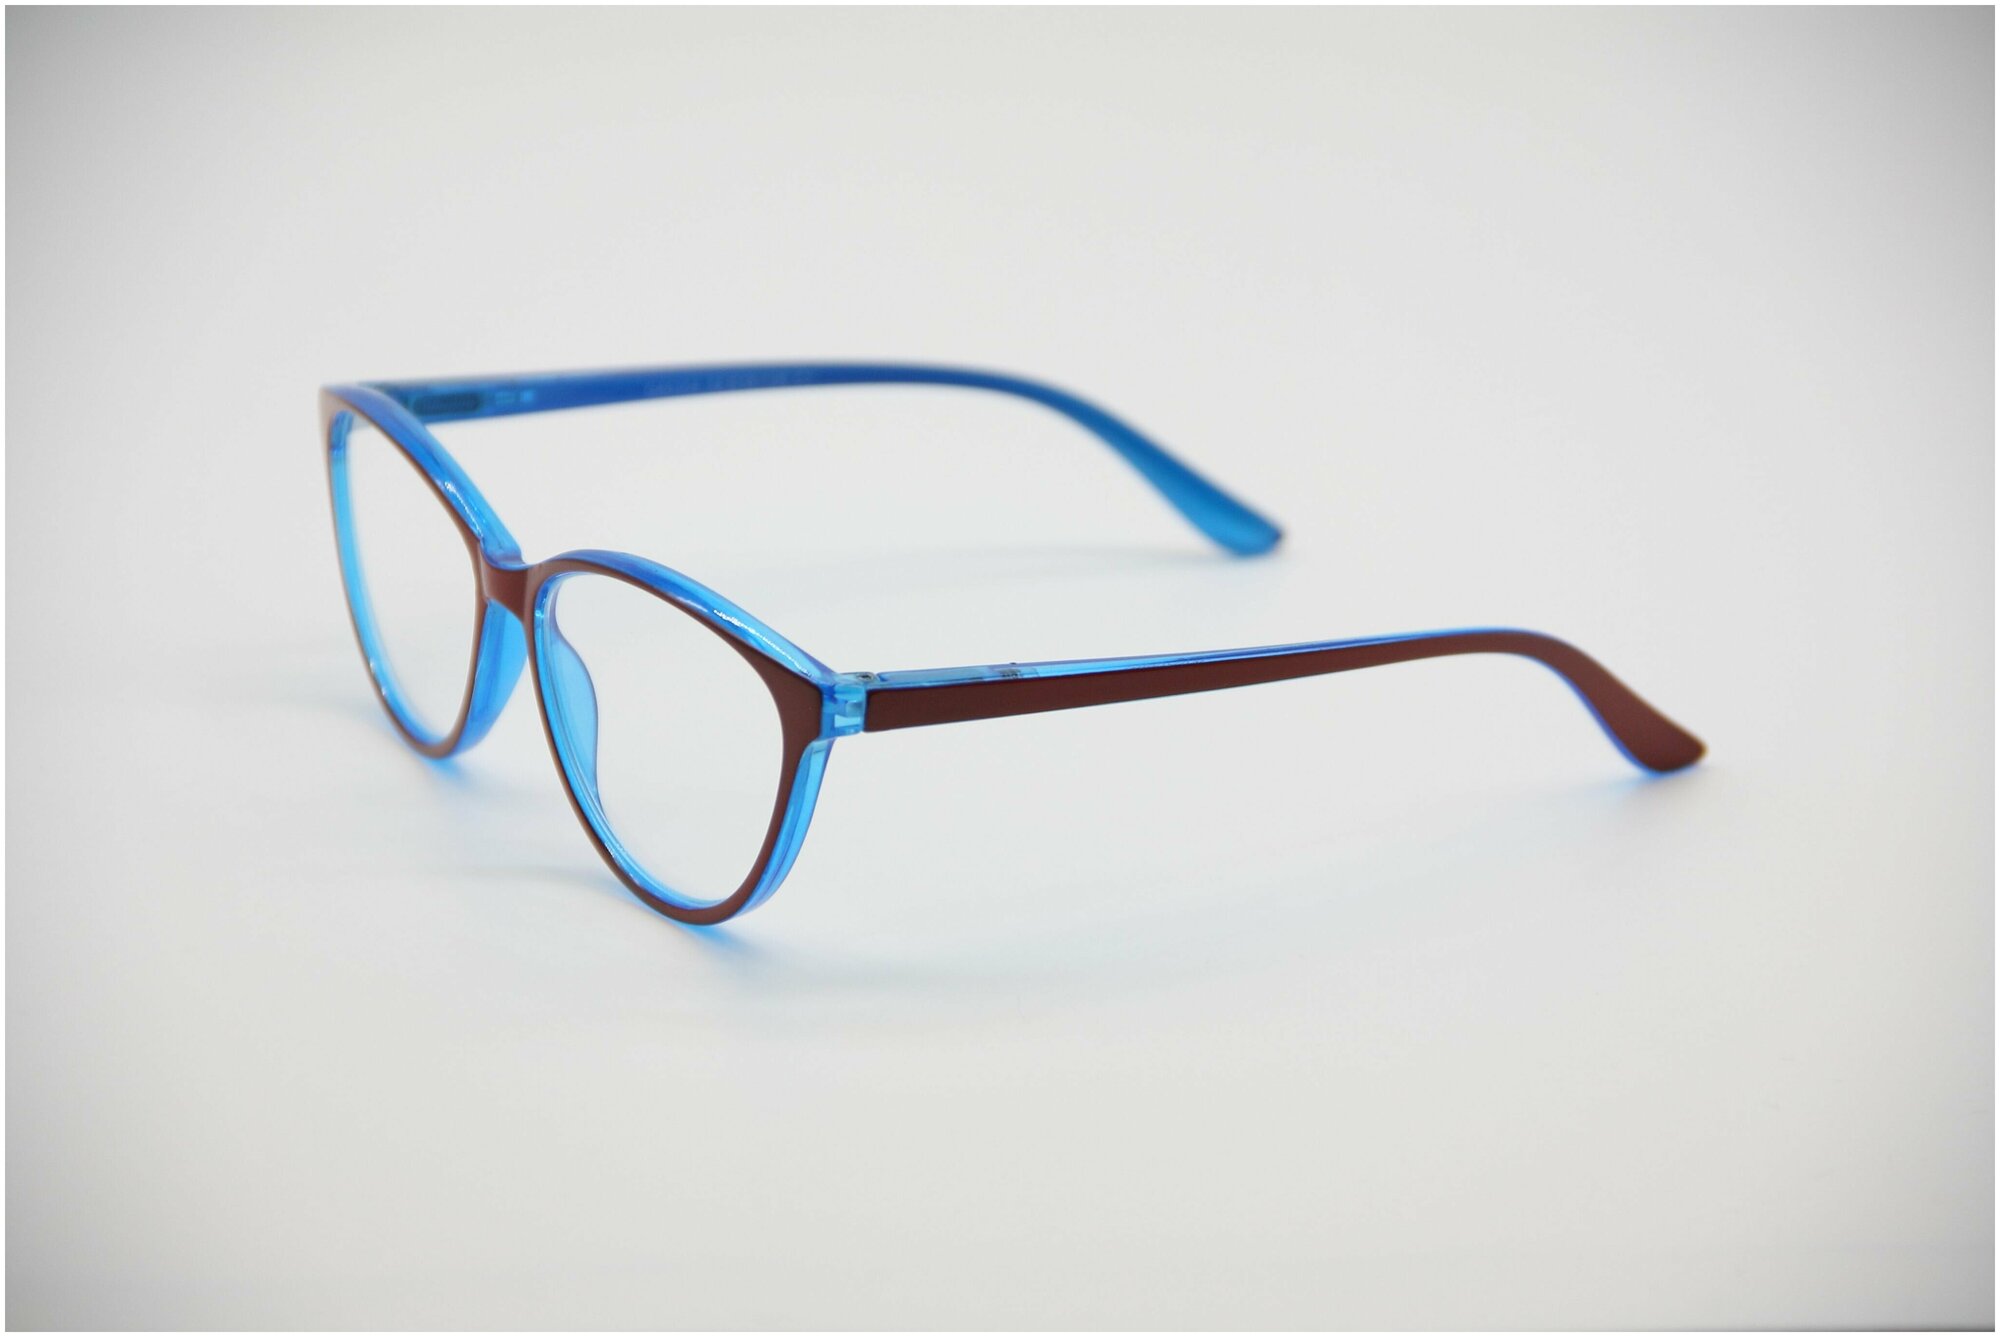 Готовые очки для зрения Marcello GA0304 C1 с диоптриями +3 /Очки женские корректирующие/Кошачий глаз/Флексовое крепление дужек/Футляр в комплекте